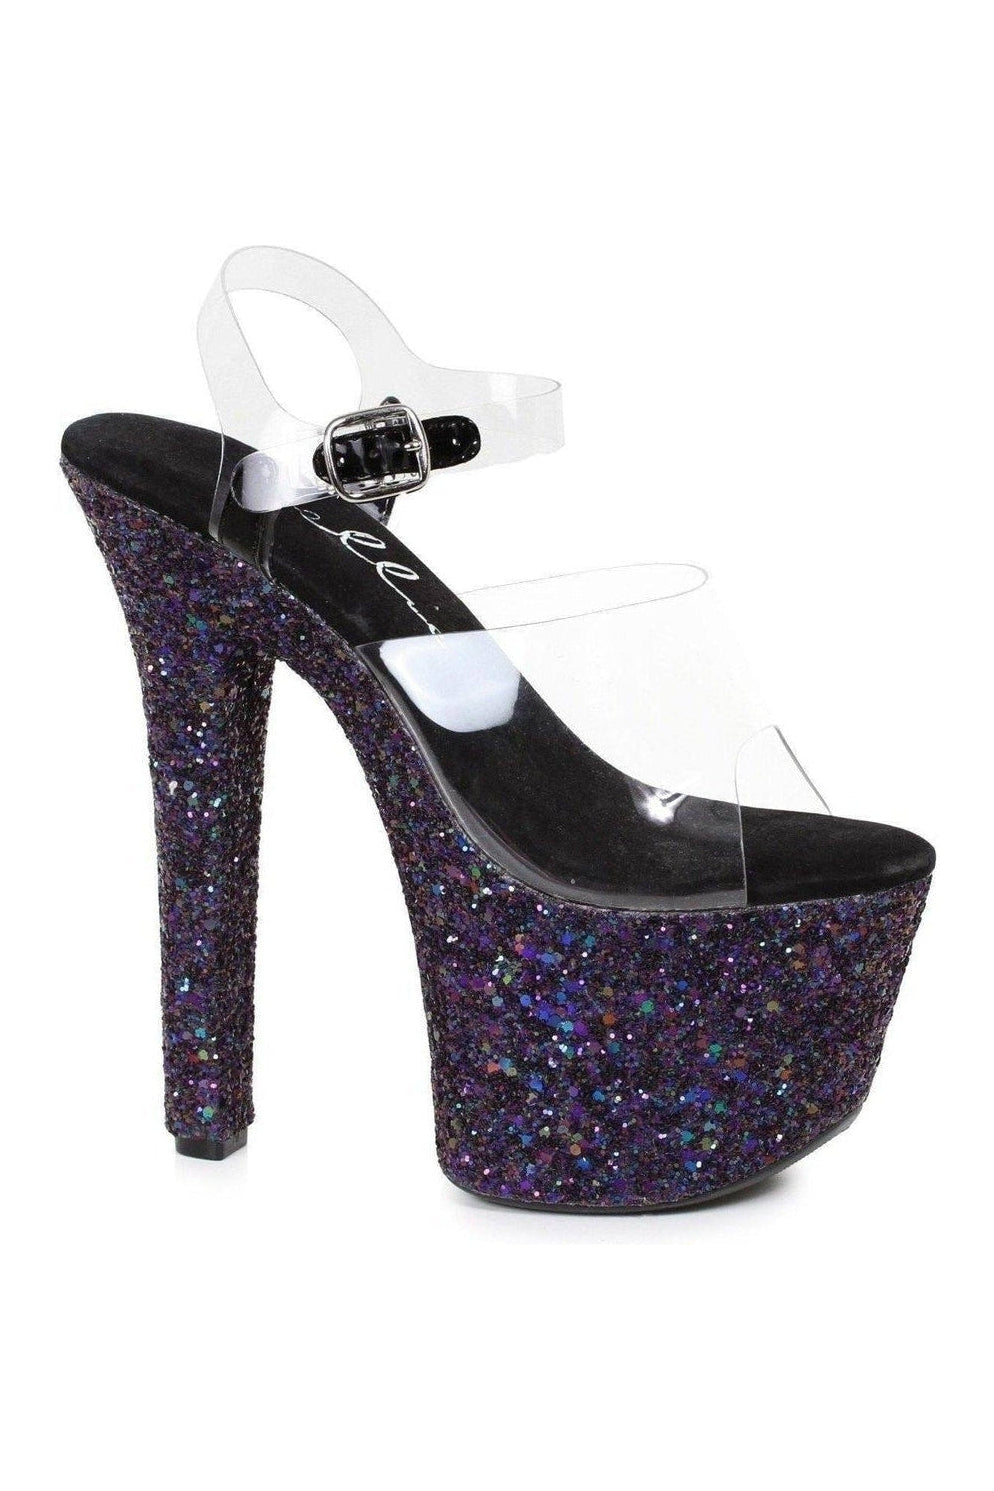 711-SERENITY Stripper Slide | Black Glitter-Ellie Shoes-SEXYSHOES.COM